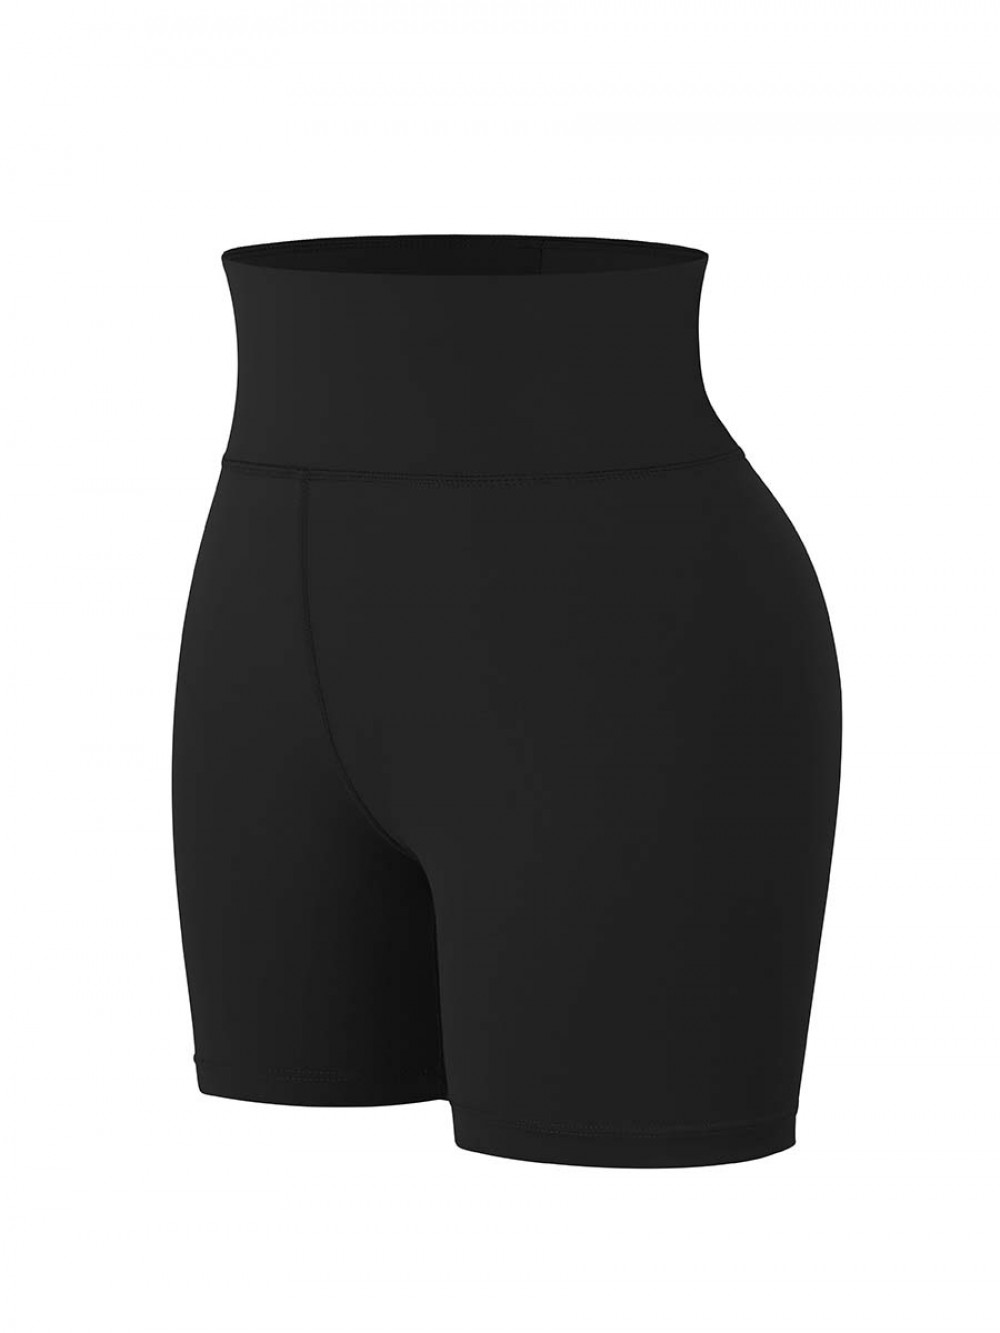 New Design Elasticity Scrunch Butt Shigh Waist Yoga Shorts